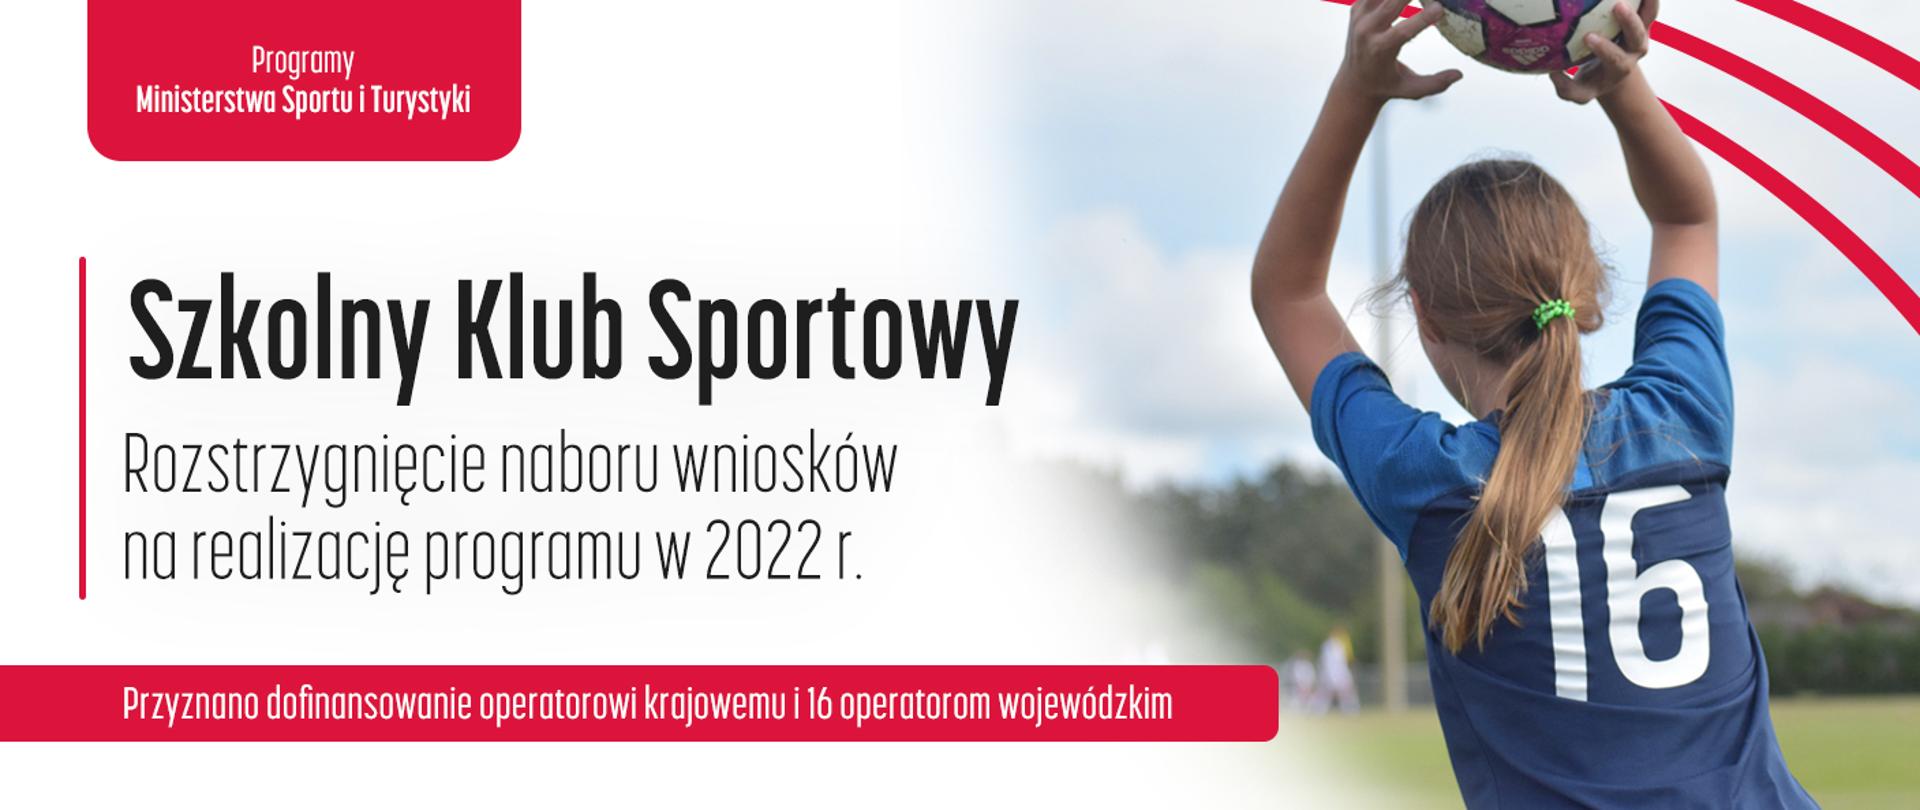 Program MSiT Szkolny Klub Sportowy - rozstrygnięcie naboru wniosków na realizację programu w 2022 r.